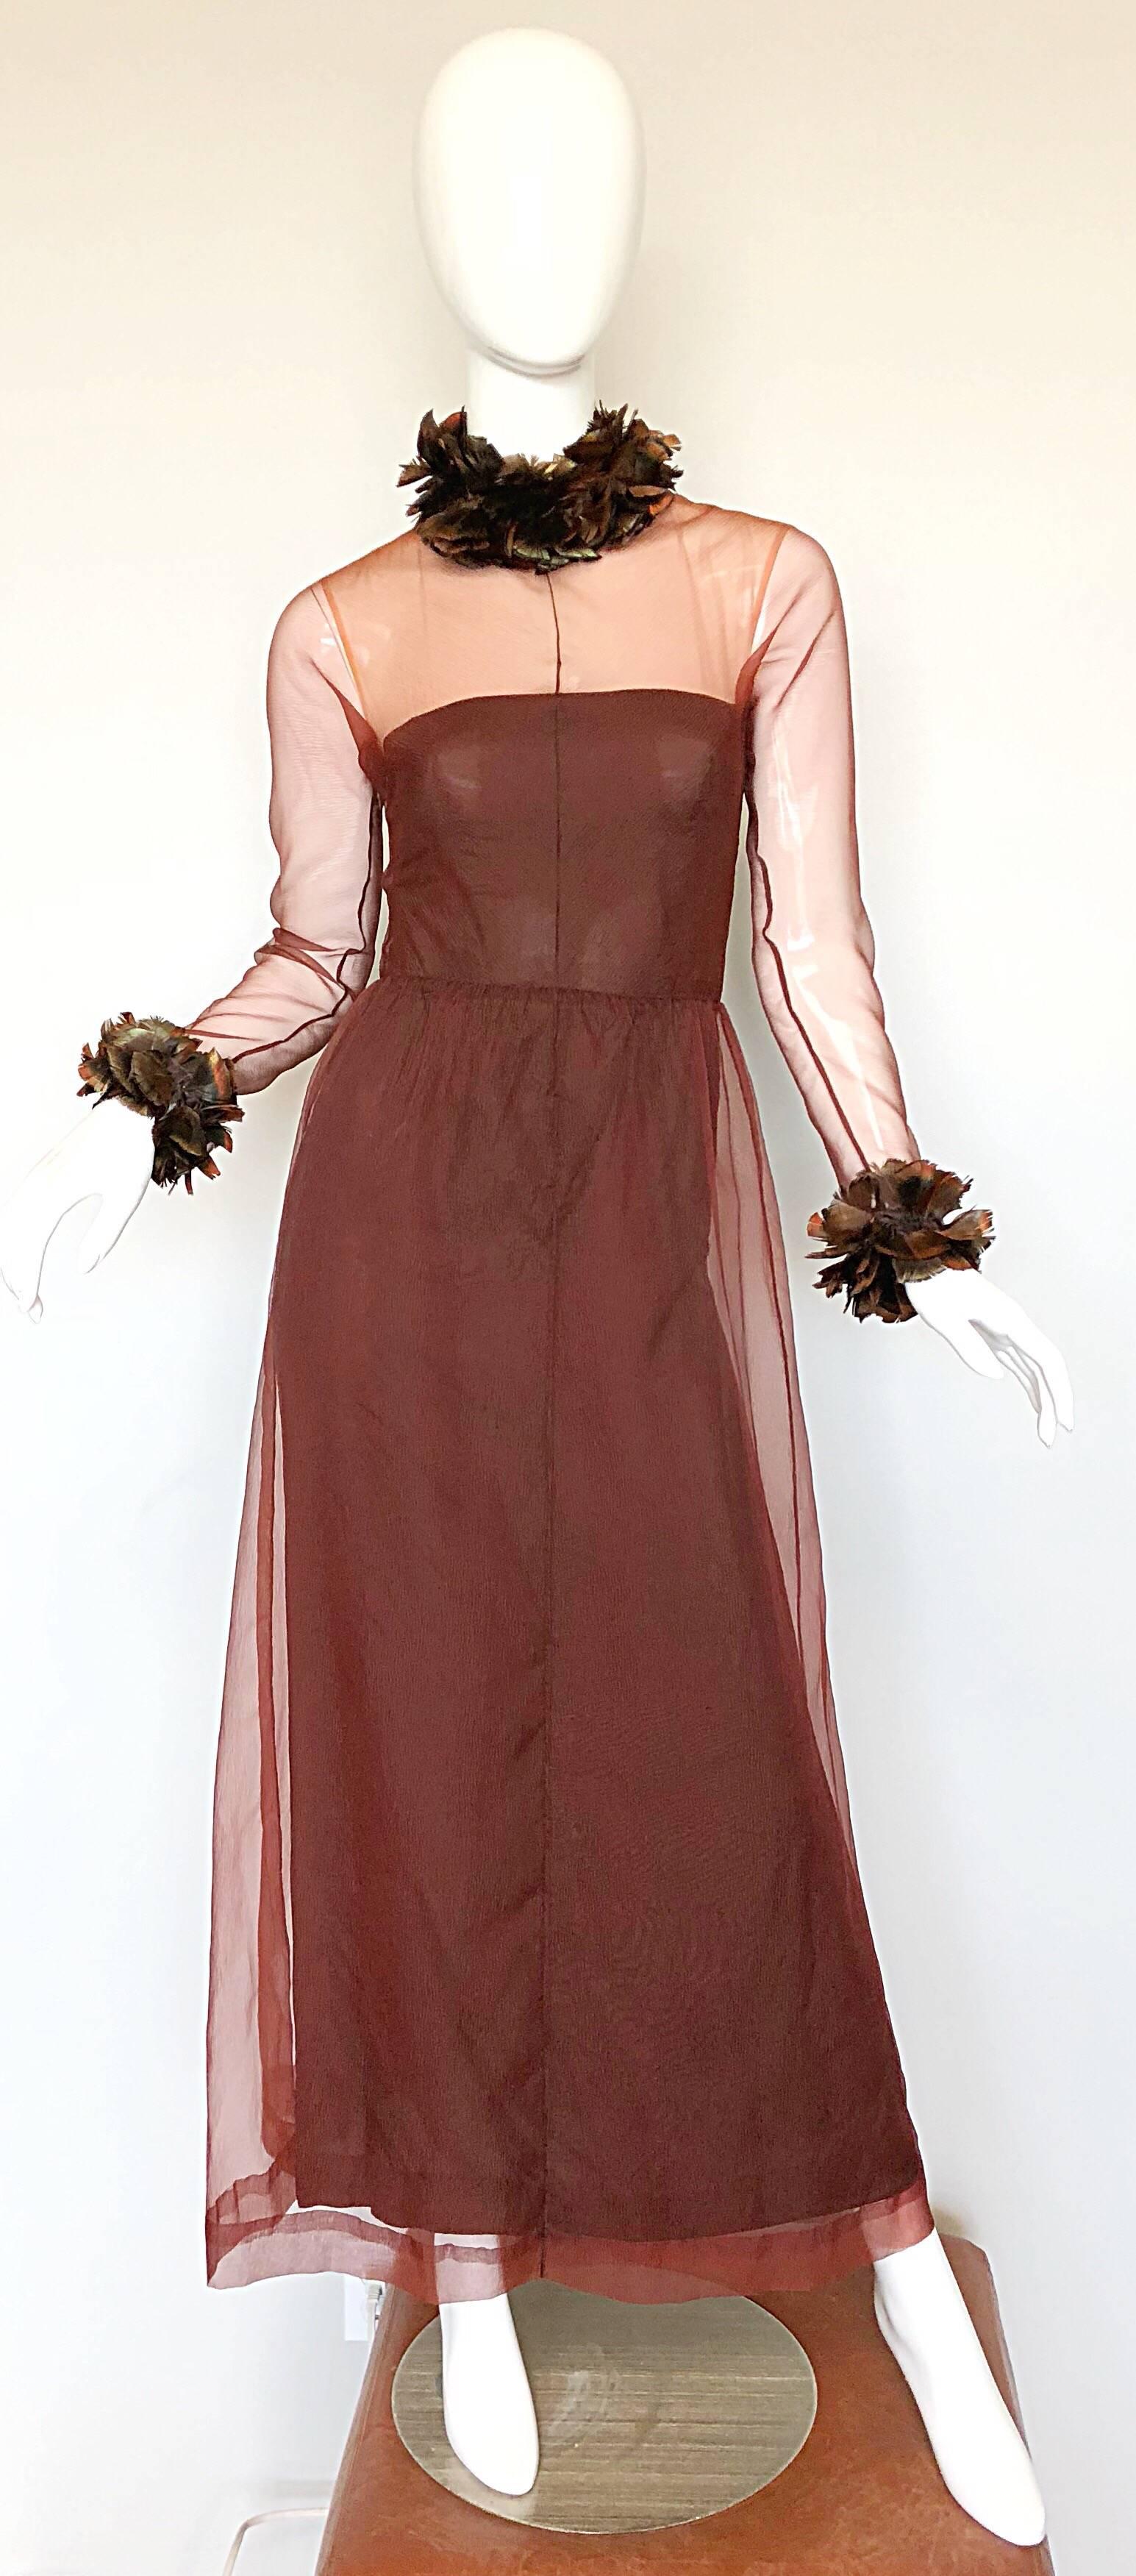 Superbe robe de soirée S/S 1971 GIVENCHY couture numérotée en mousseline de soie marron chocolat ! Cette robe du début des années 70 est extrêmement bien faite. Le corsage est taillé dans une illusion de couleur nude et les manches sont